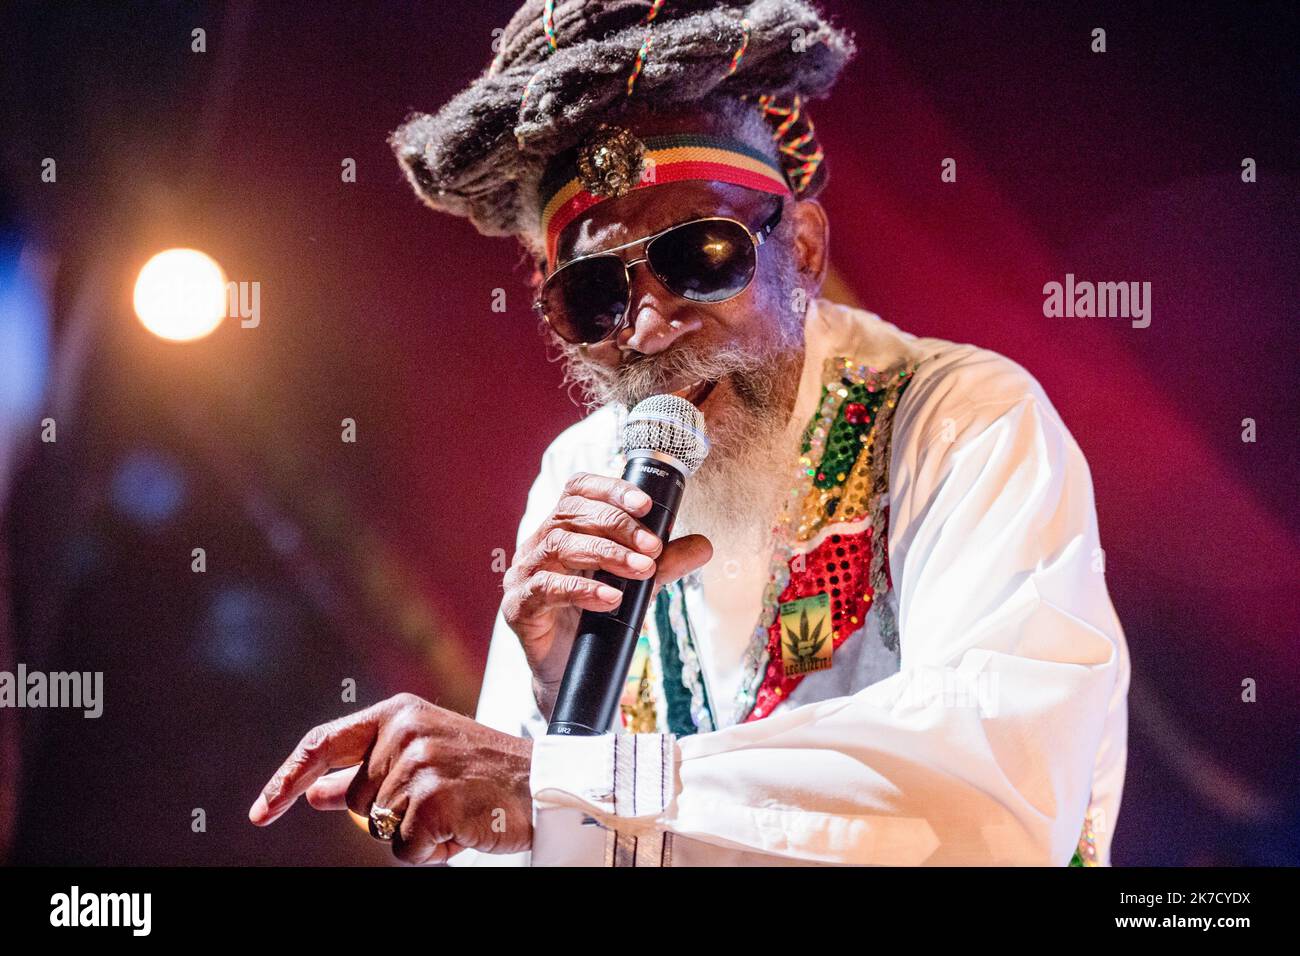 ©Michael Bunel / Le Pictorium/MAXPPP - Michael Bunel / Le Pictorium - 20/07/2014 - France / Paris - Neville O'Riley Livingston, plus connu sous le nom de Bunny Wailer sur la scene du cabaret sauvage, ne le 10 avril 1947 a Kingston, est un auteur-compositeur-interprete jamaicain. Wailer est l'un des membres fondateurs du groupe The Wailers, avec Bob Marley et Peter Tosh. Il chante, compose, et joue des percussions nyabinghi. Il quitte le groupe des Wailers en 1974, afin de poursuivre une carriere solo. / 20/07/2014 - France / Paris - Neville O'Riley Livingston, better known as Bunny Wailer on t Stock Photo